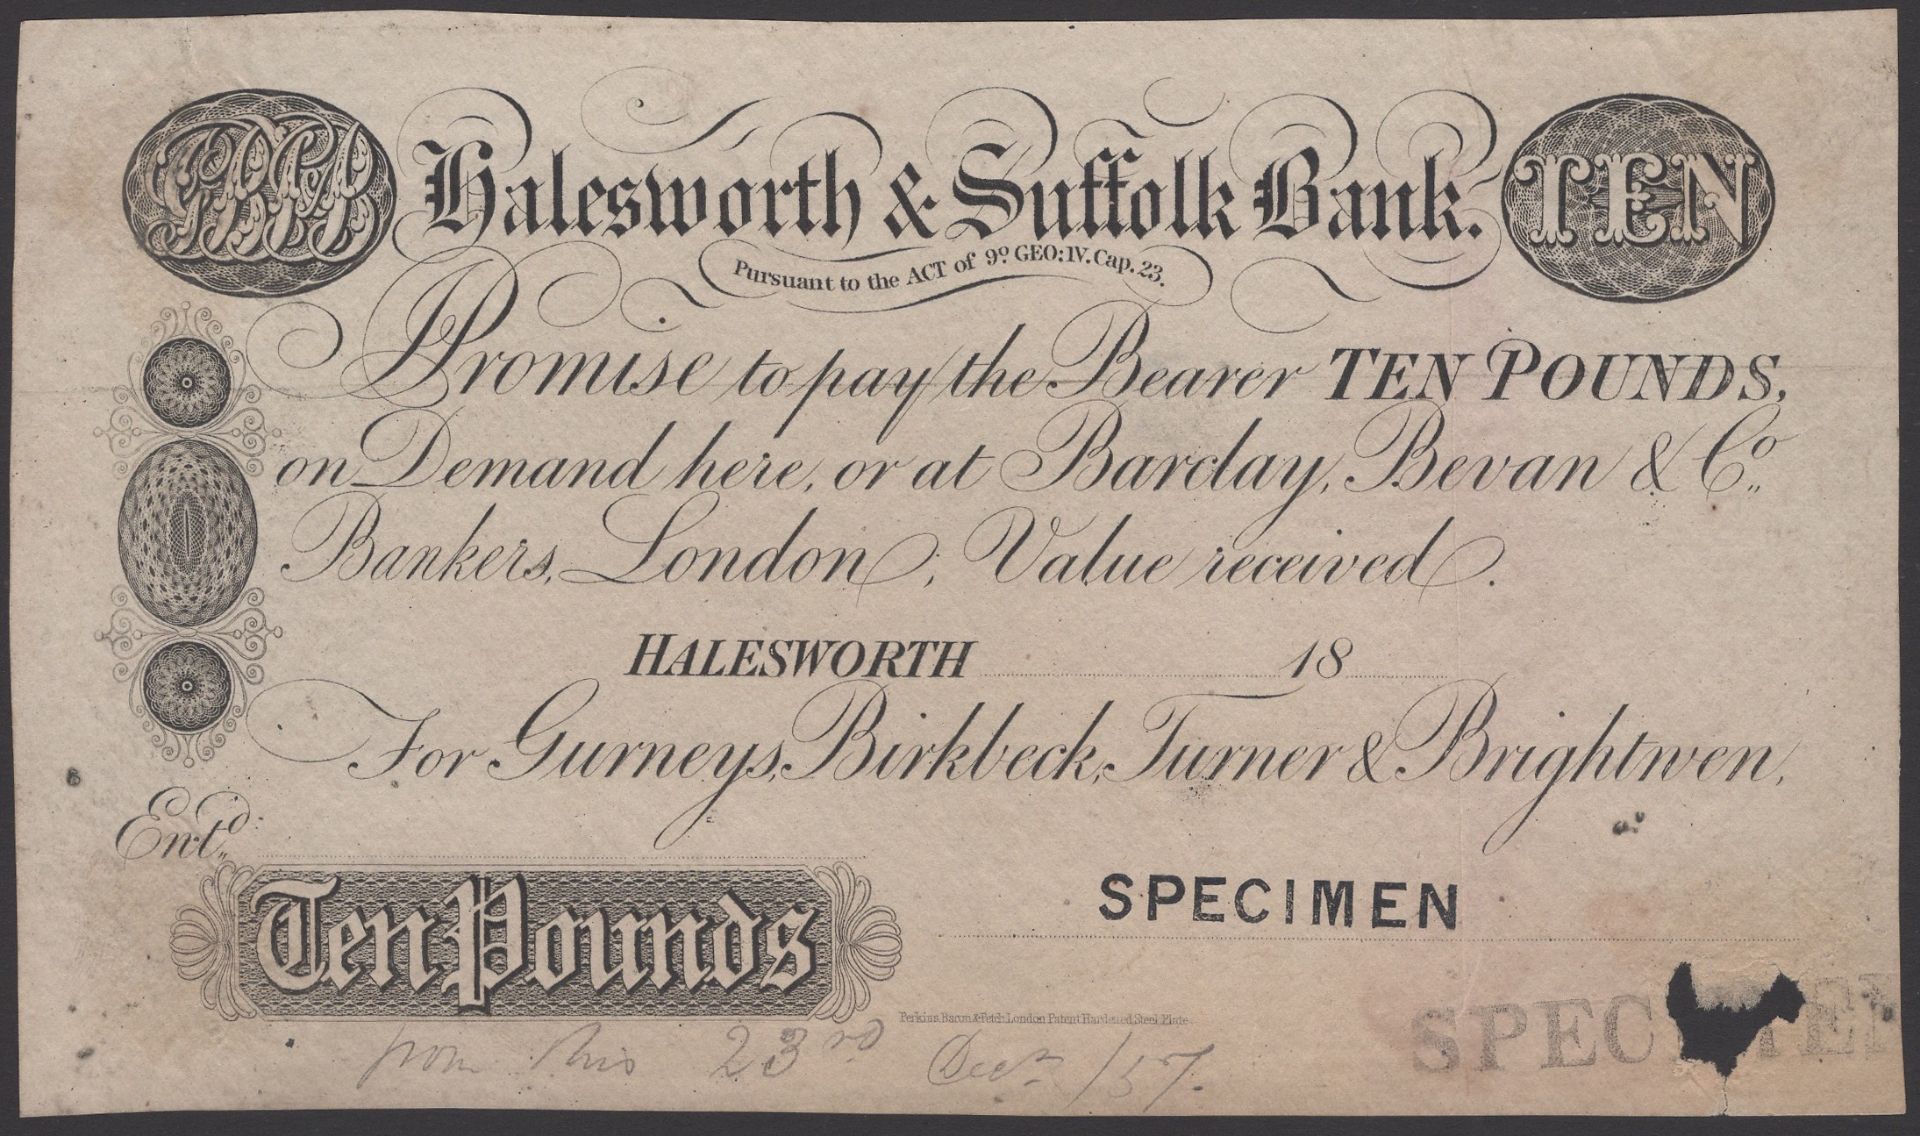 British Banknotes